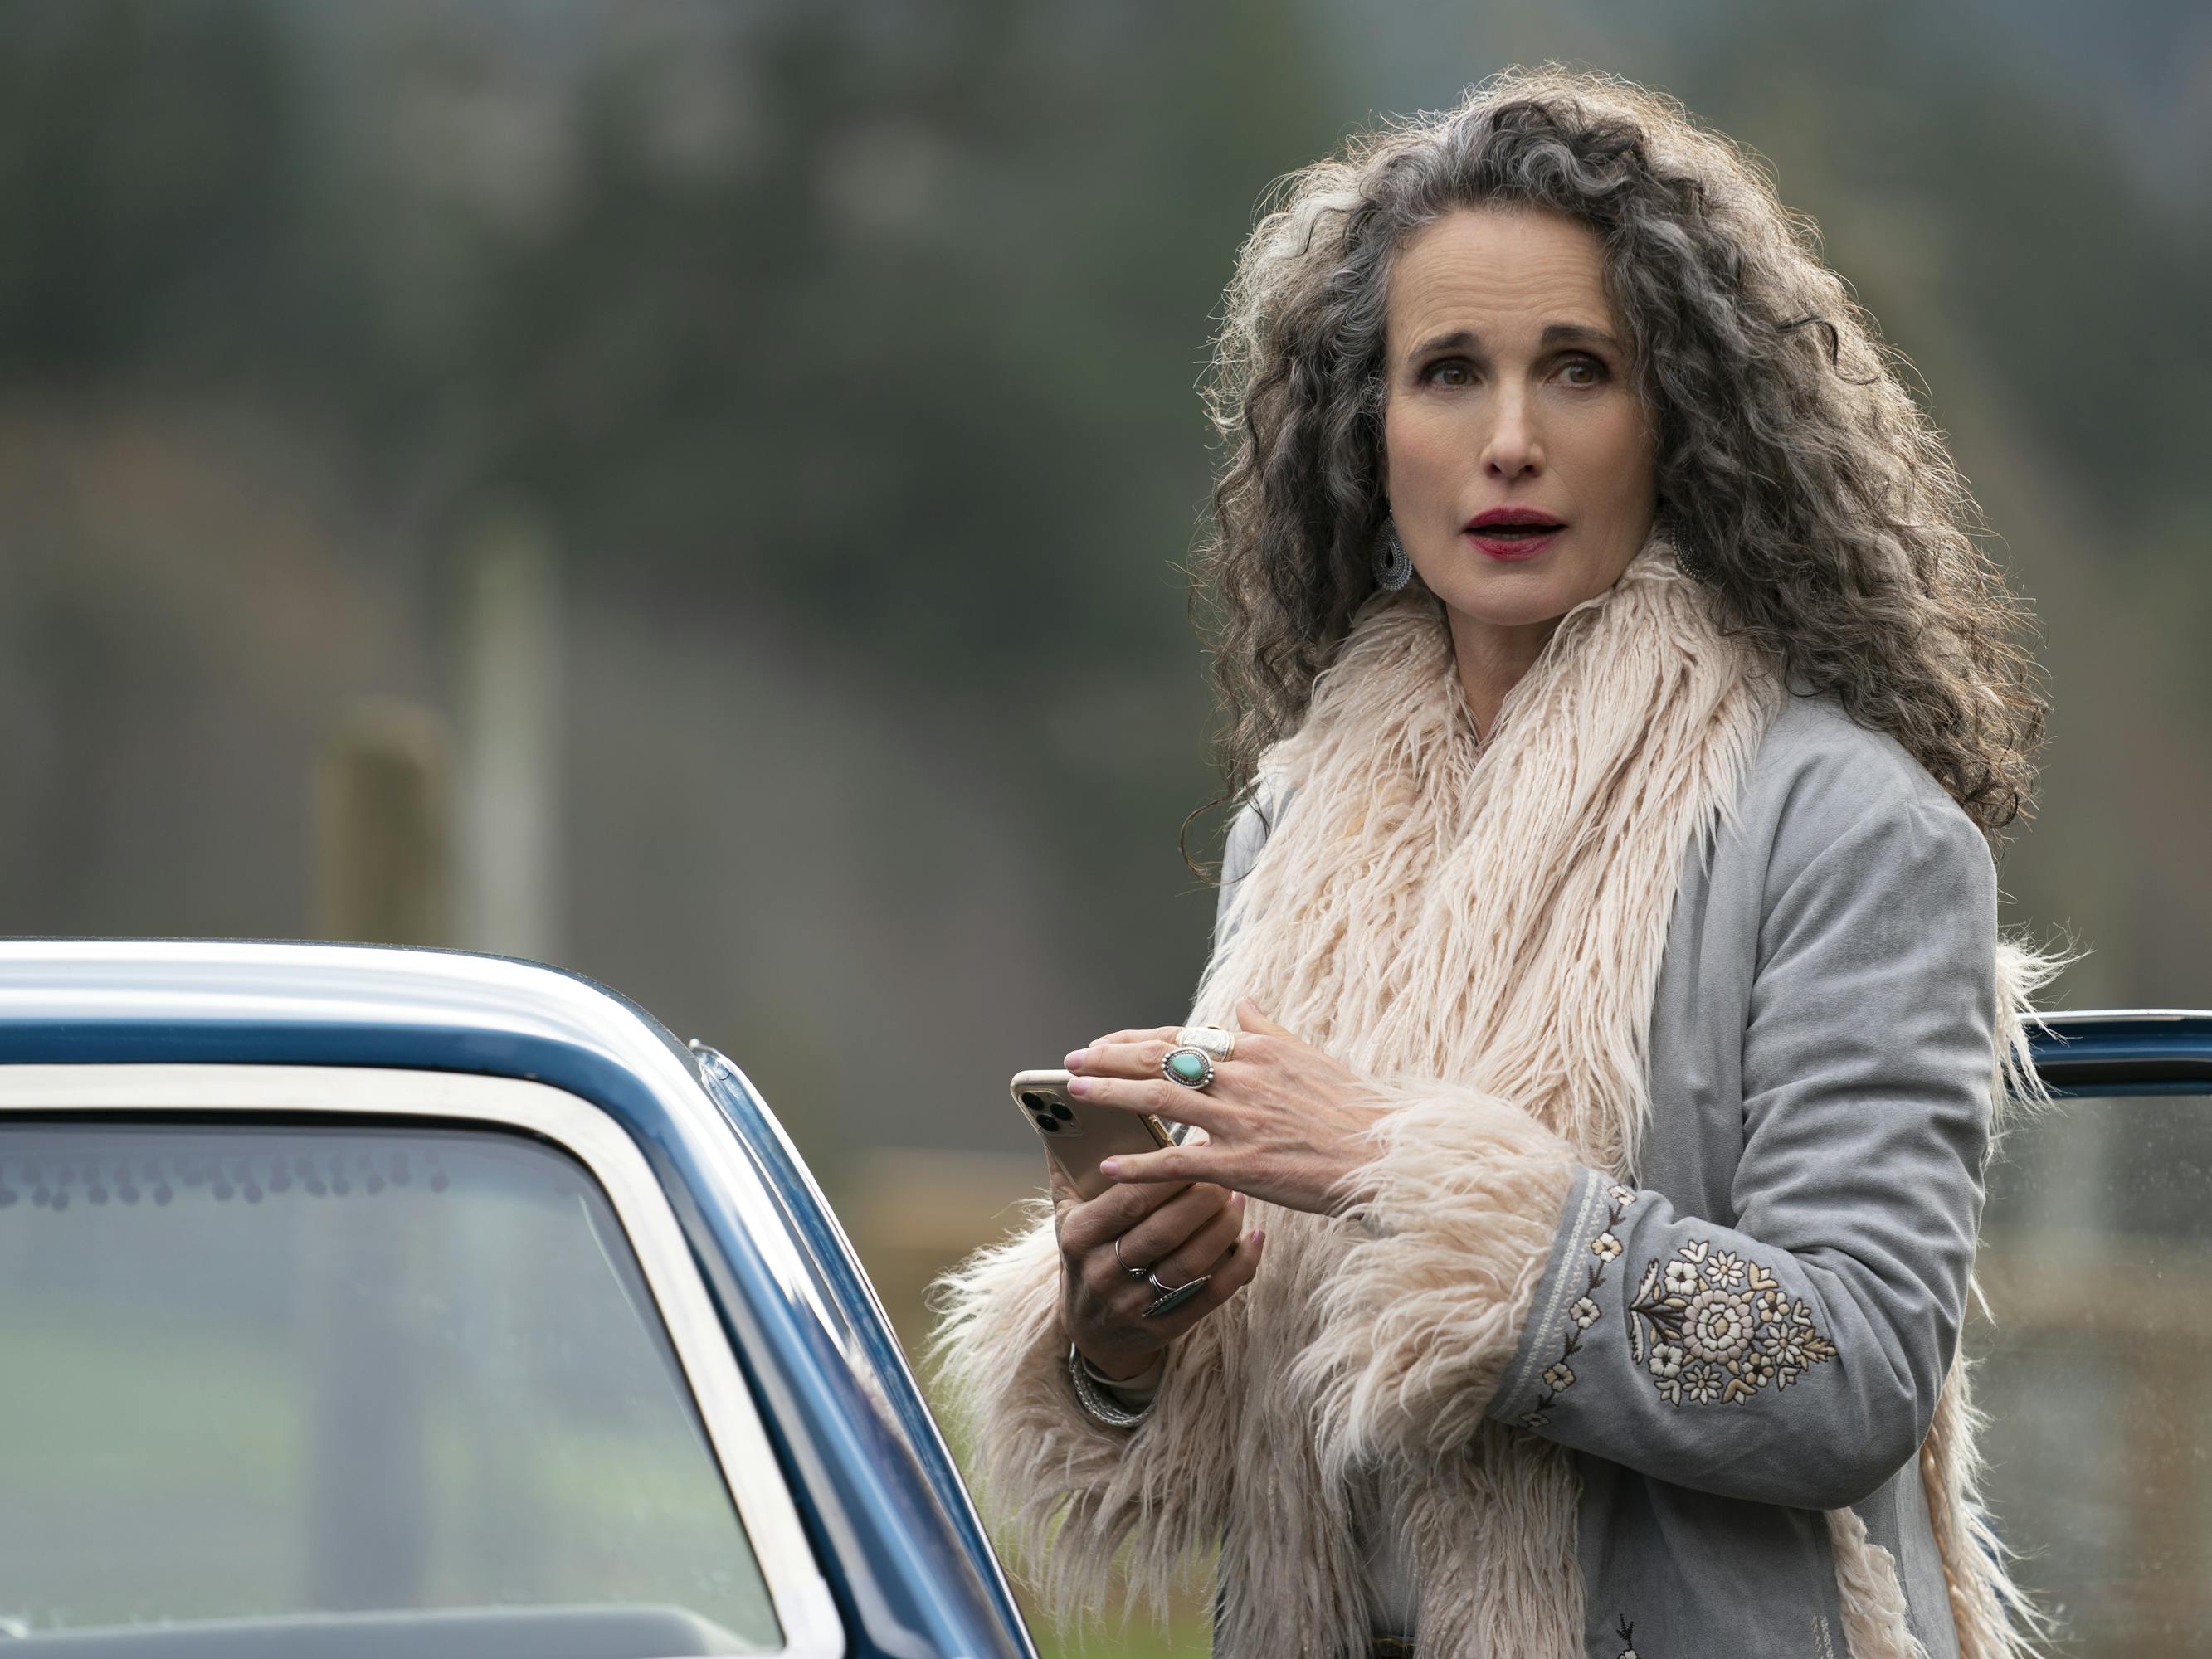 Paula (Andie MacDowell) wears a fur-lined jacket as she steps into a car.